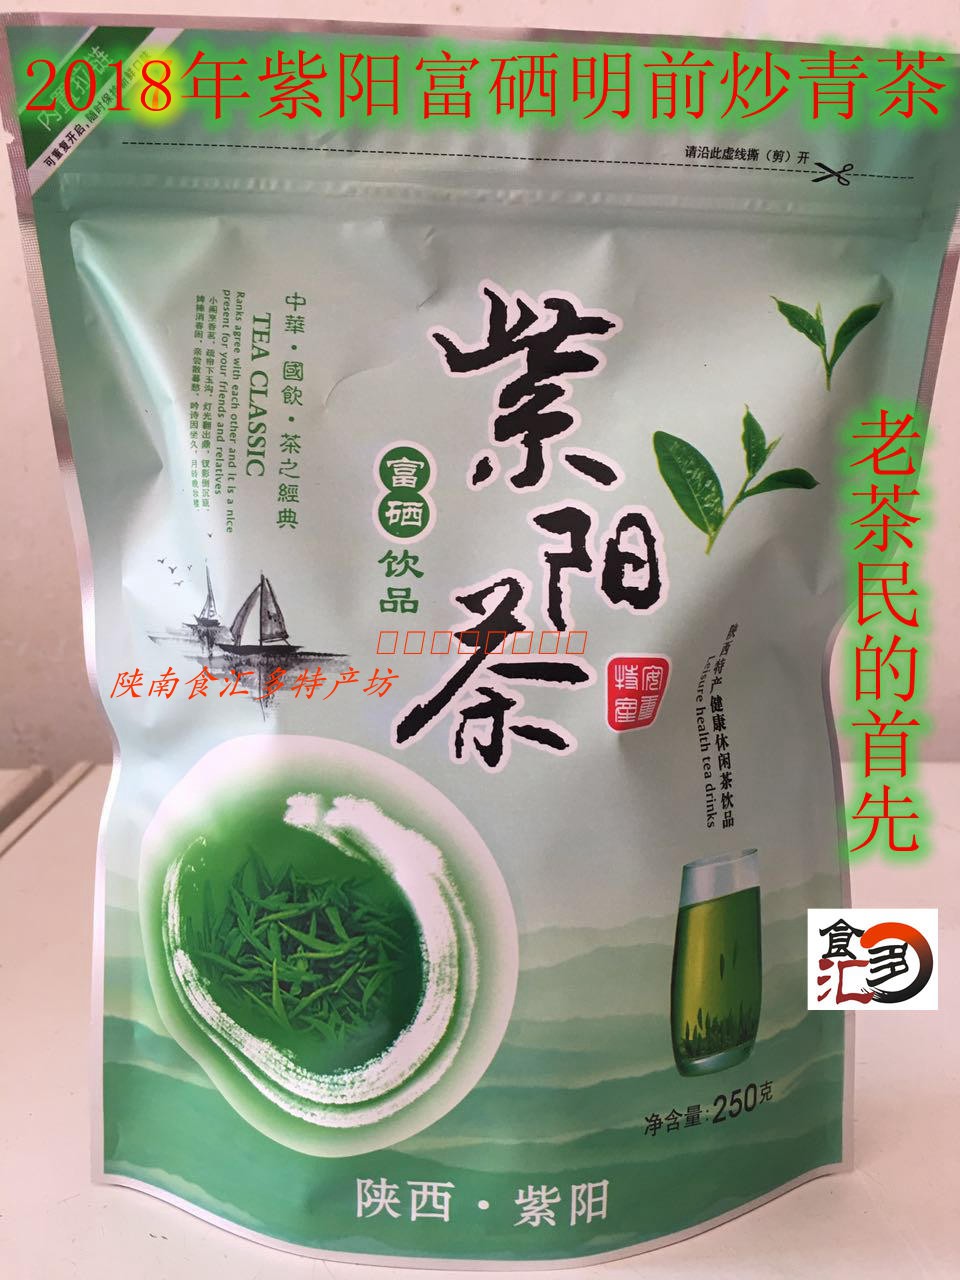 2019 New Tea Shaanxi Ziyang Selenium-rich Tea Fried Qingmaojian 250g Green Tea in Fair Bulk before Rain